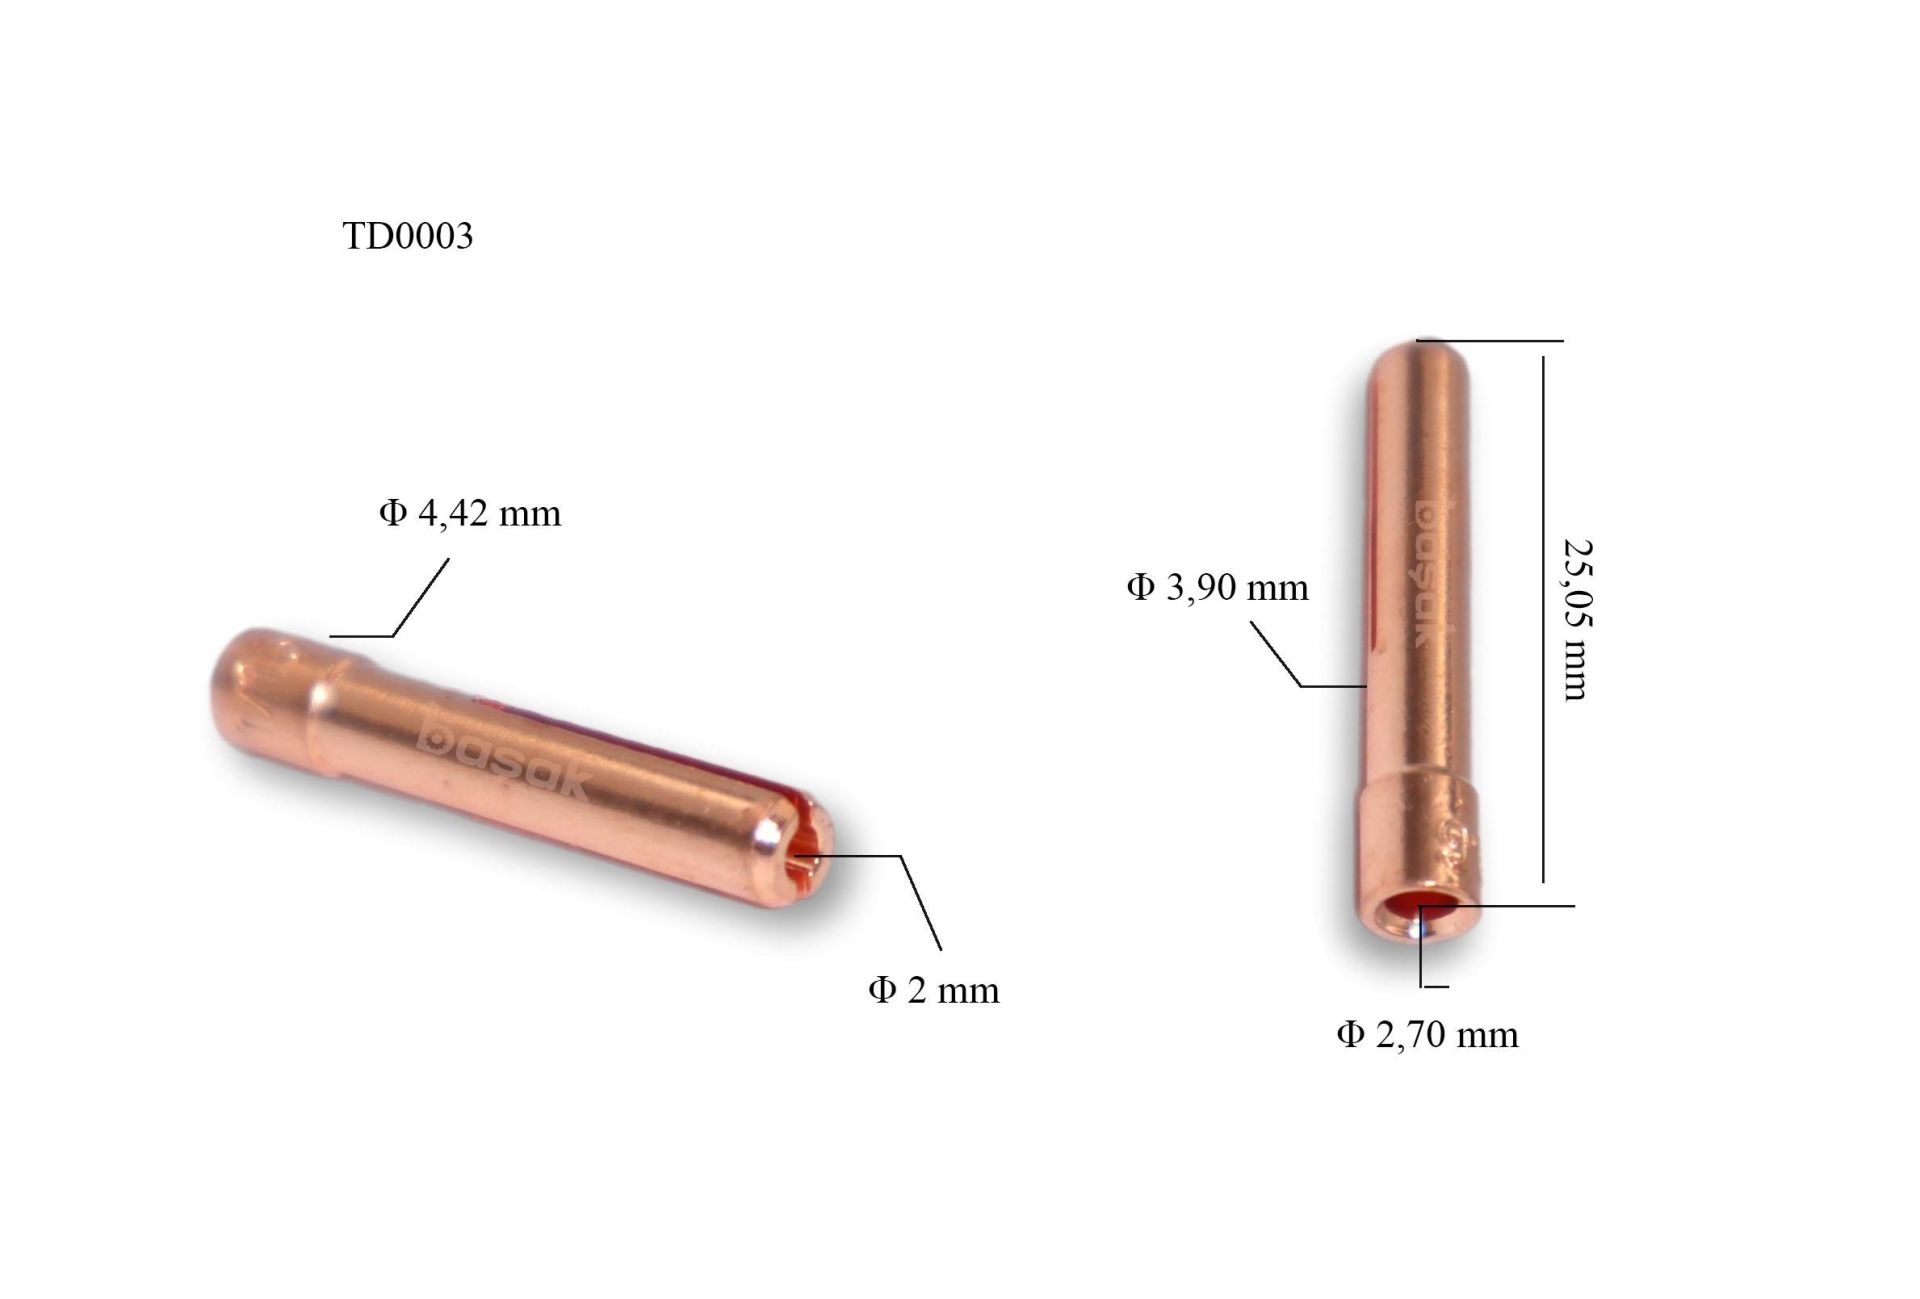 TD0003-20 2 mm Fındık Collet-Pens Tig 9-20 Trafimet